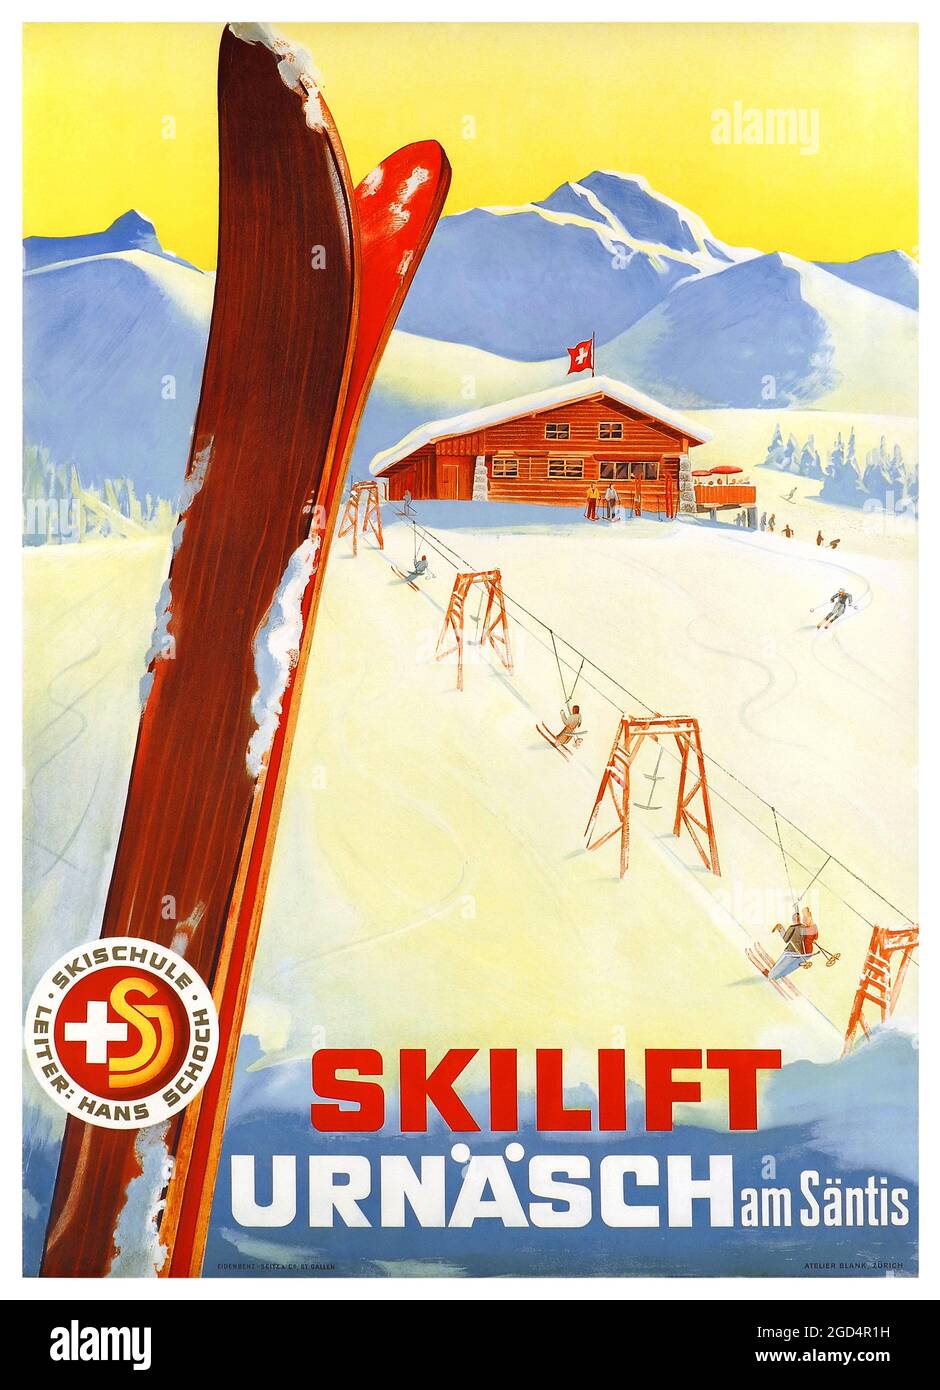 Skilift Urnäsch am Säntis. Skischule Leiter, Hans Schoch. Eidenbenz-Seitz & Co, St. Gallen Atelier Blank, Zürich. Restauriertes Vintage-Poster, das 1944 in der Schweiz veröffentlicht wurde. Stockfoto